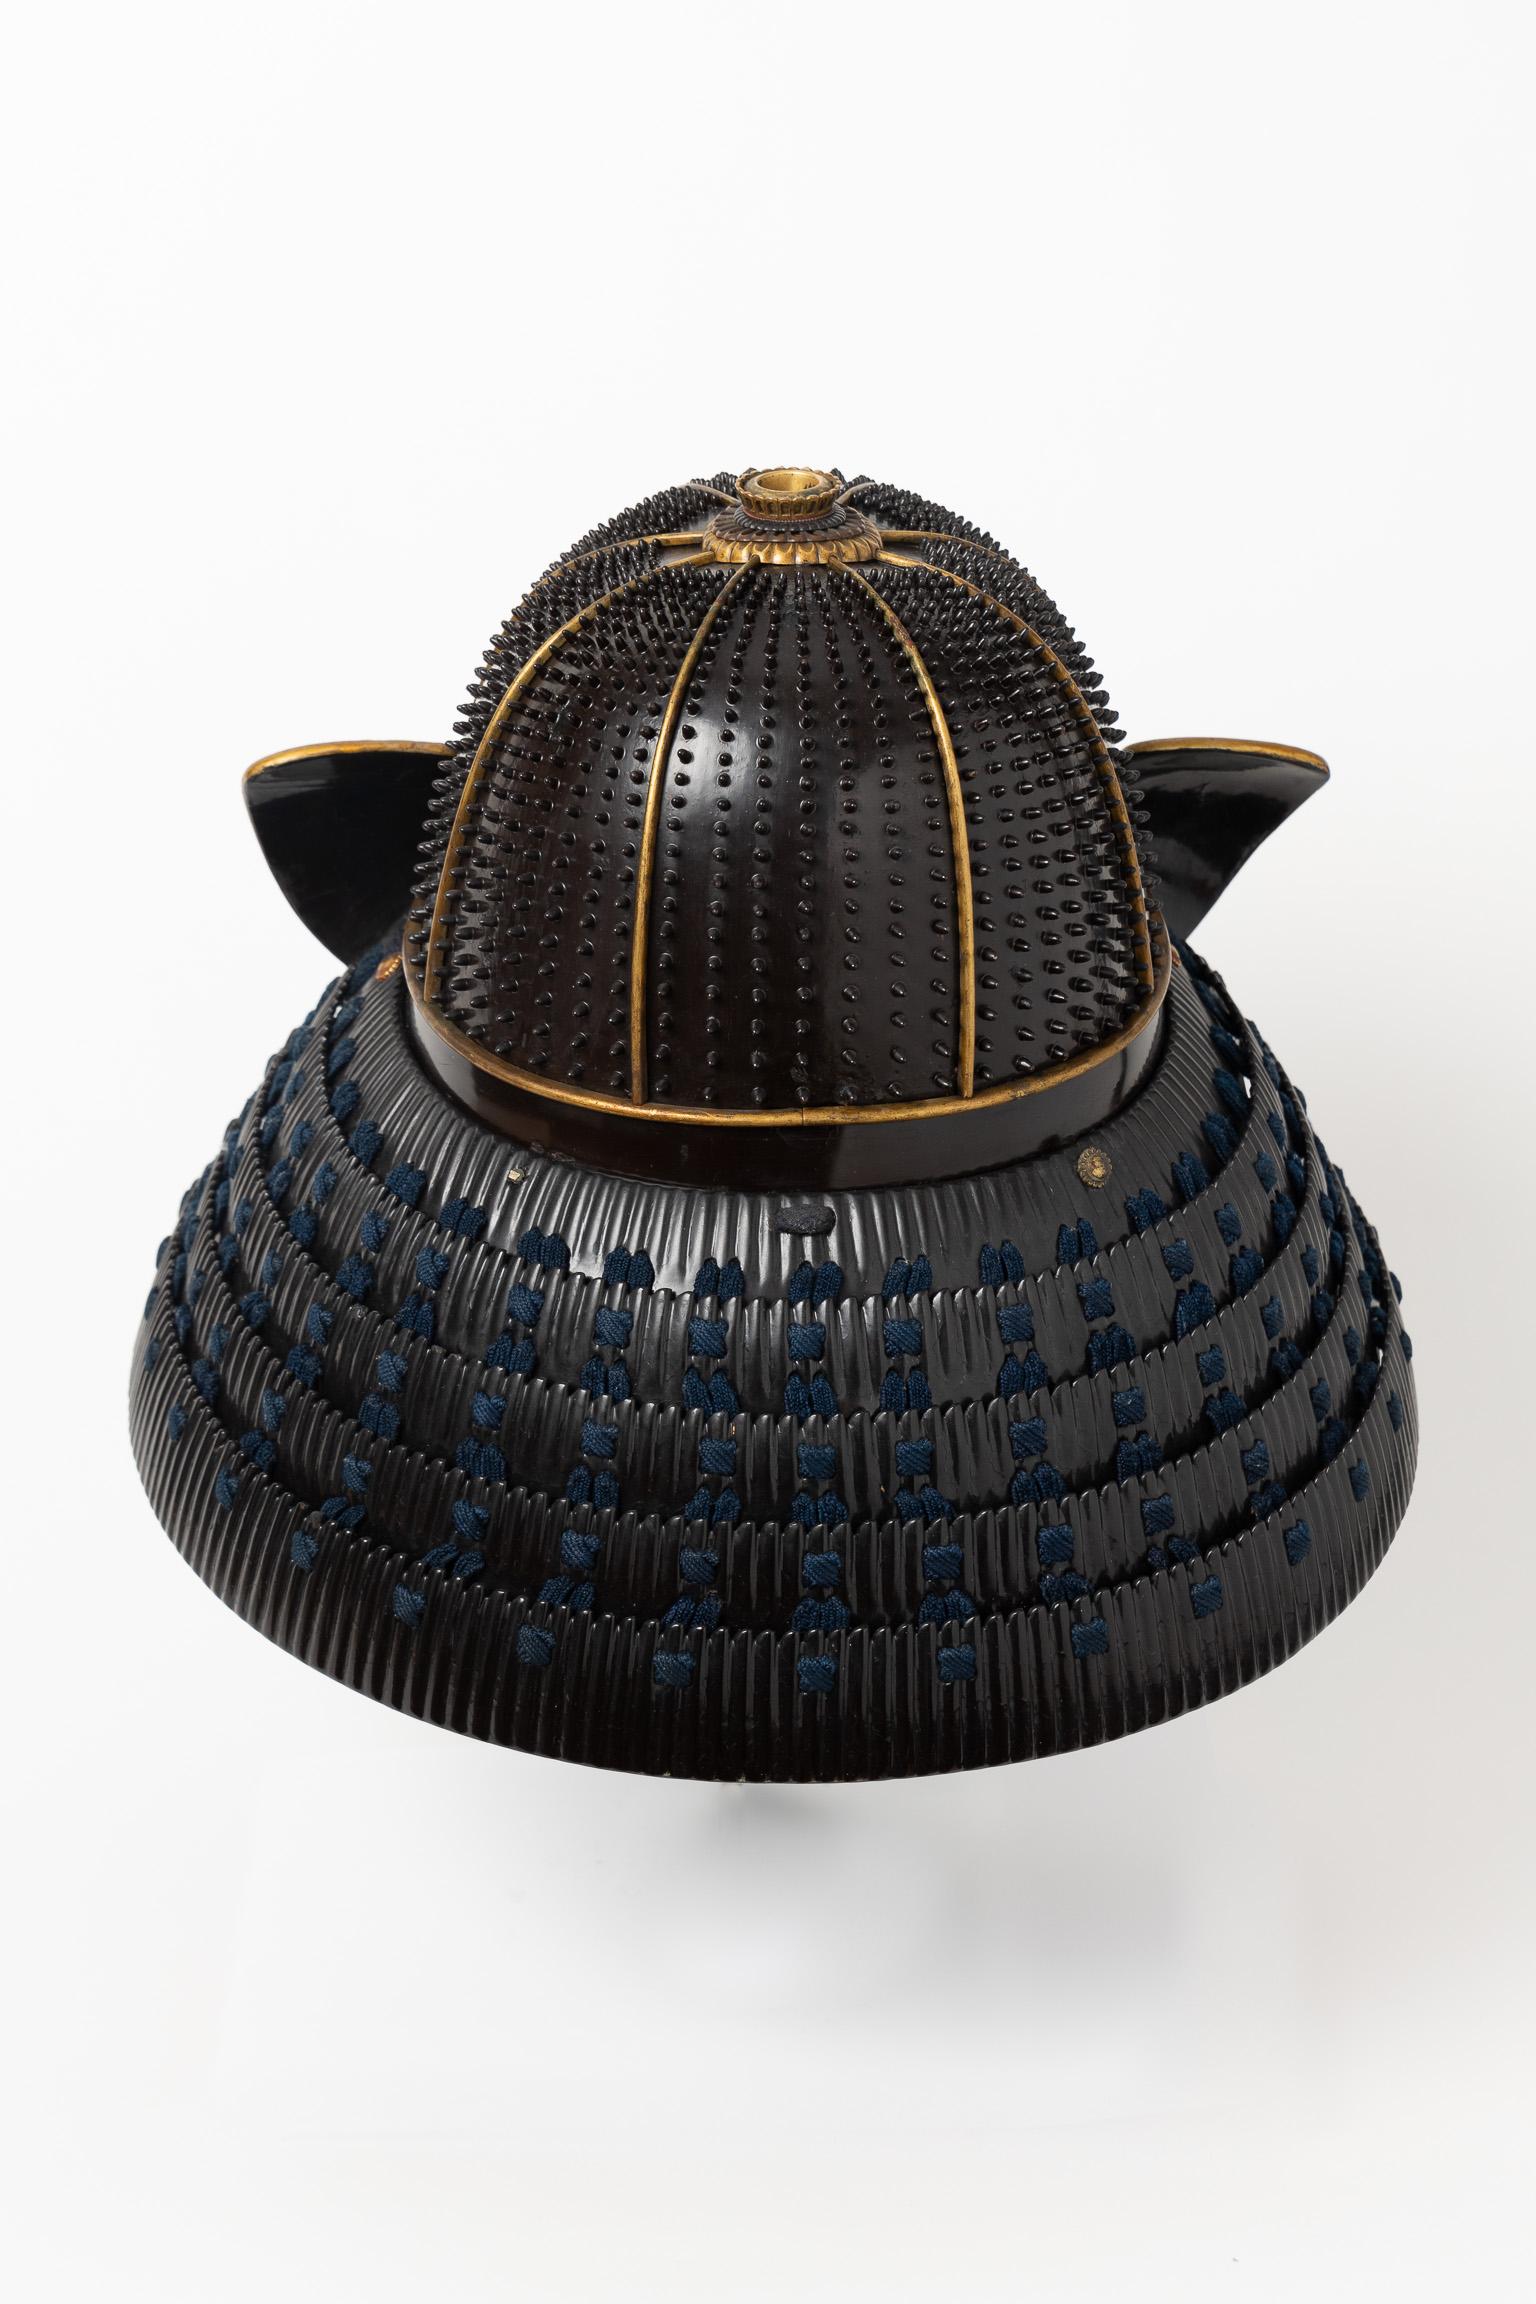 shogun hat